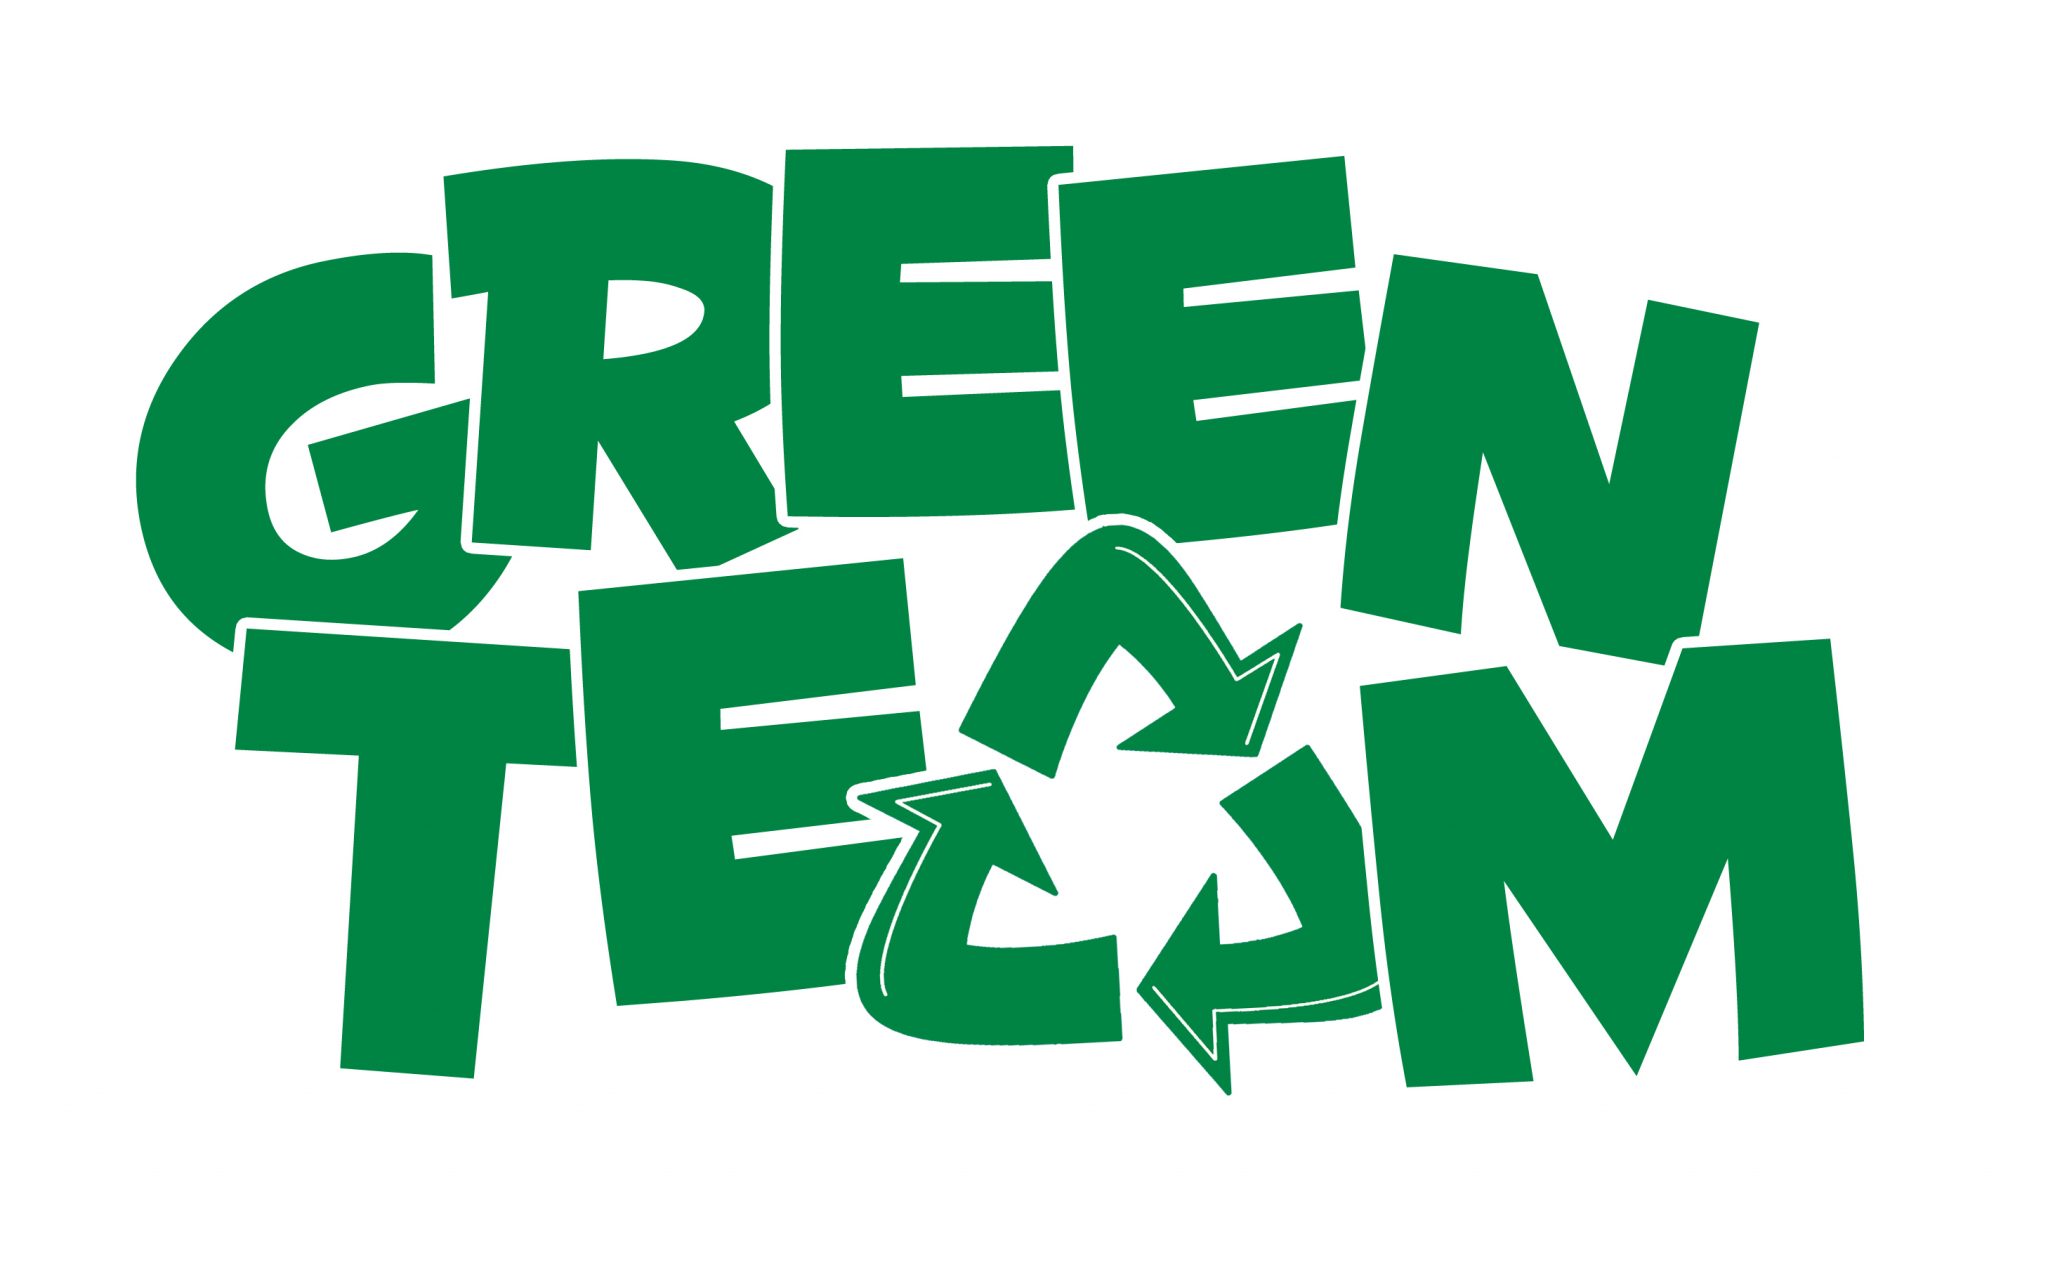 Meet the 2020 “Green Team” Members!